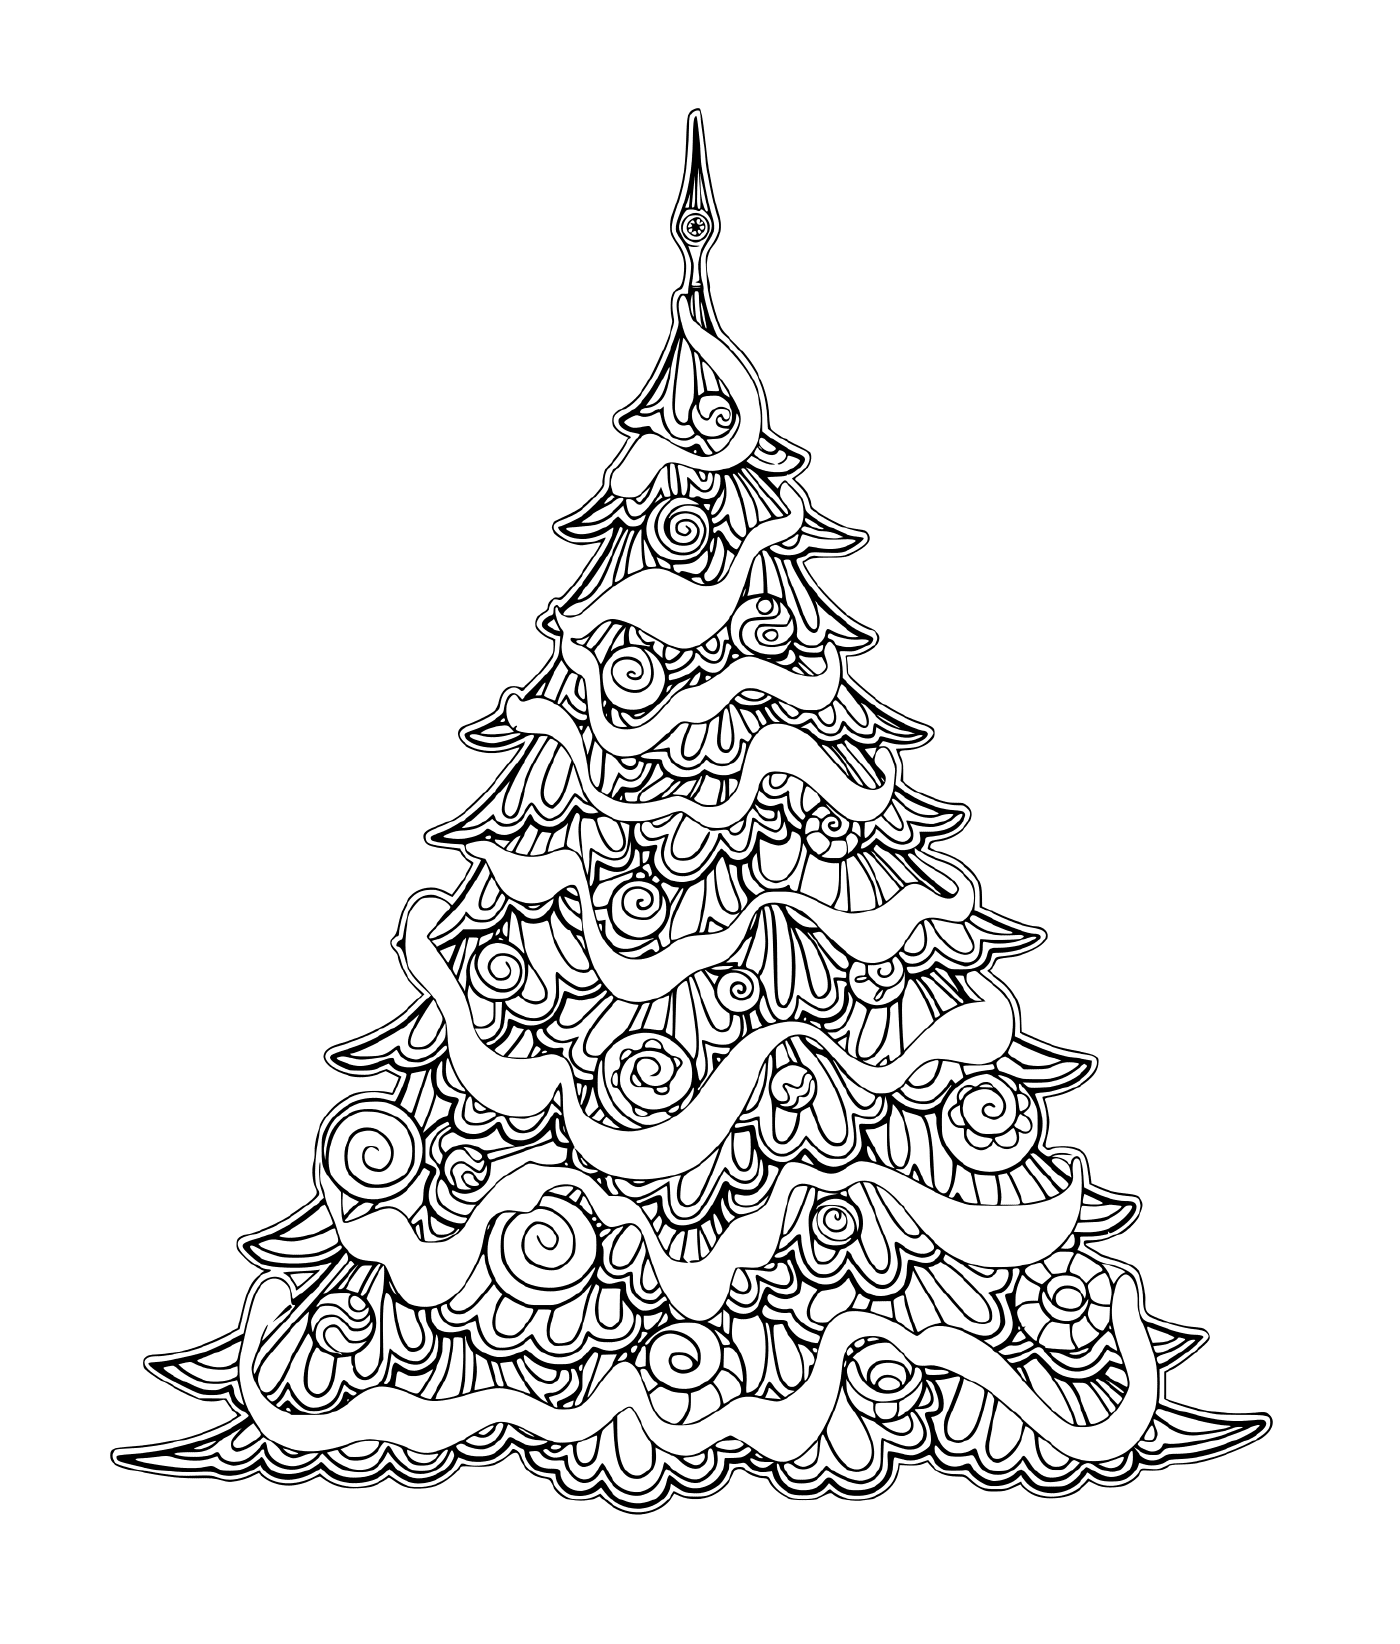  Весёлая рождественская елка с украшениями 